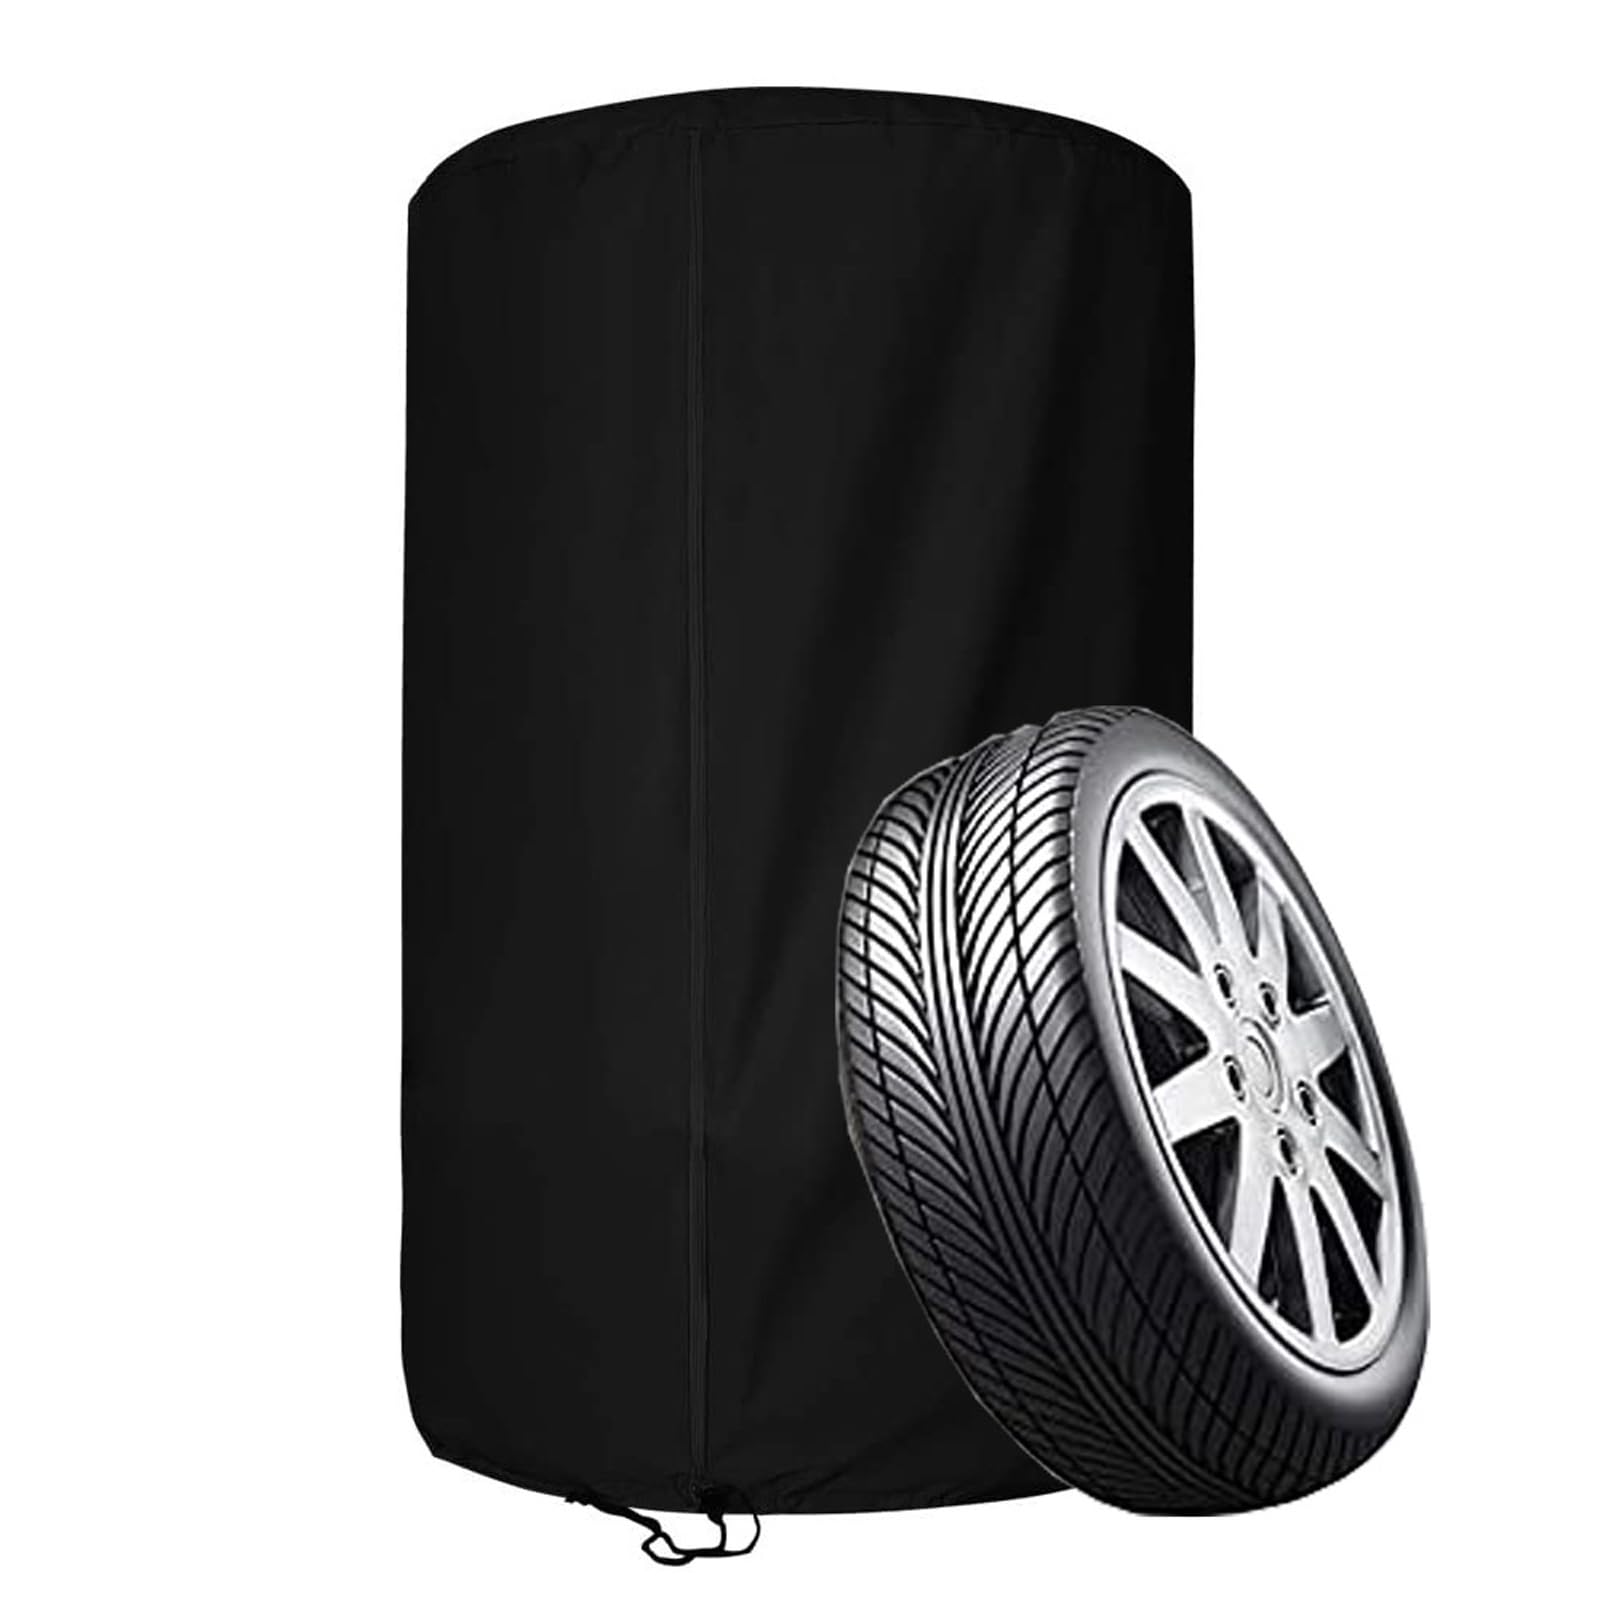 Reifenabdeckung für 4 Reifen, wasserdichte Reifenschutzhülle für 4 Autoreifen, 210D /420D OxfordAufbewahrungstasche für 4 Ersatzreifen mit Reißverschluss(Size:210D Oxford ：82 * 120cm,Color:Black) von Crysterris